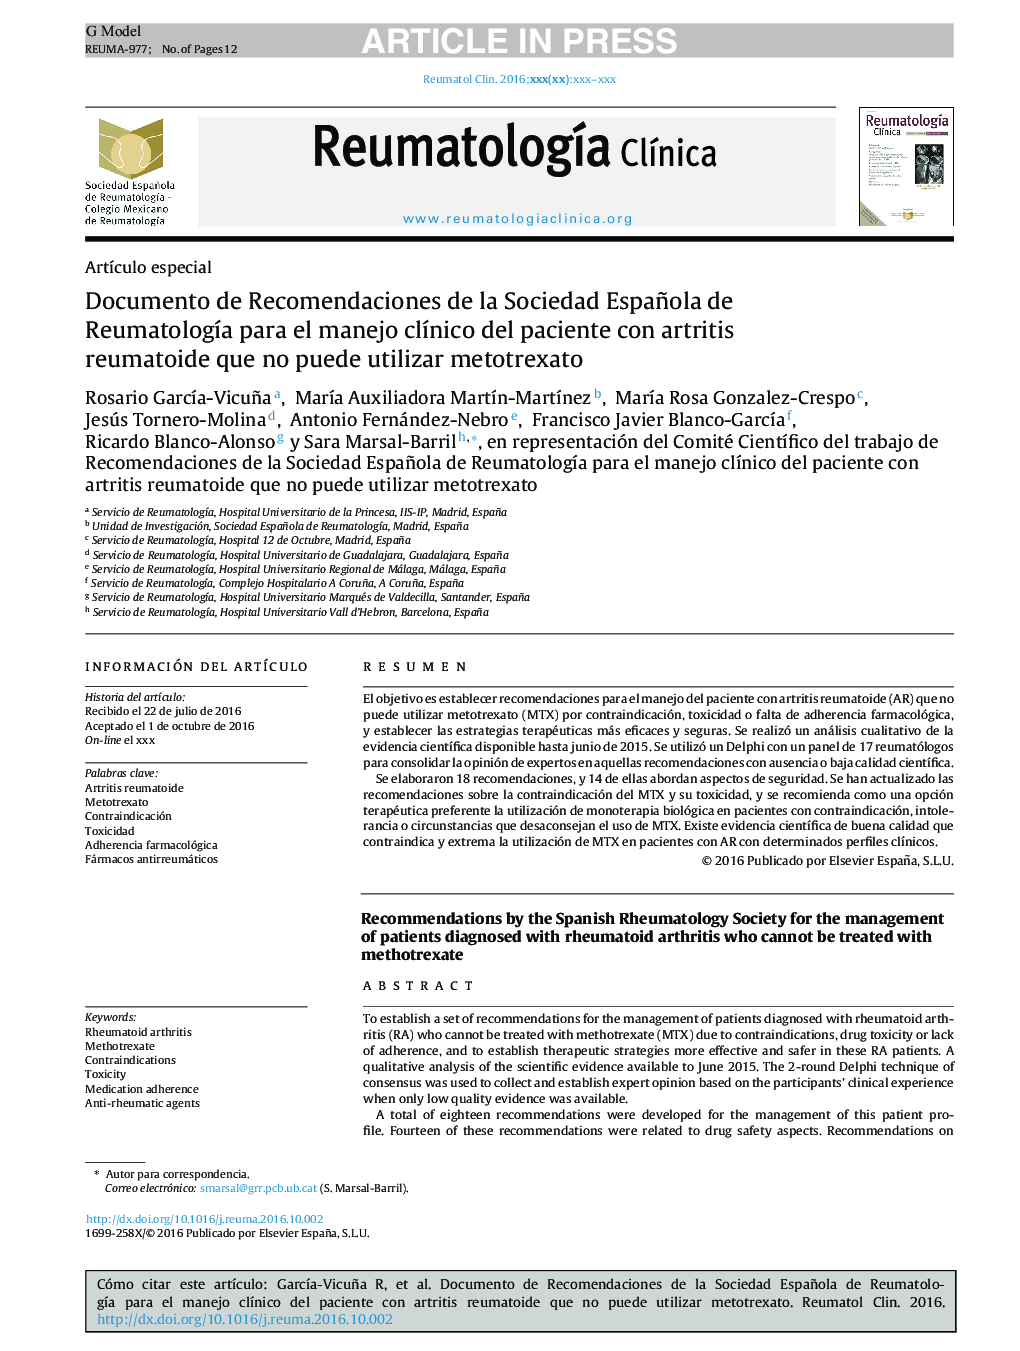 Documento de Recomendaciones de la Sociedad Española de ReumatologÃ­a para el manejo clÃ­nico del paciente con artritis reumatoide que no puede utilizar metotrexato